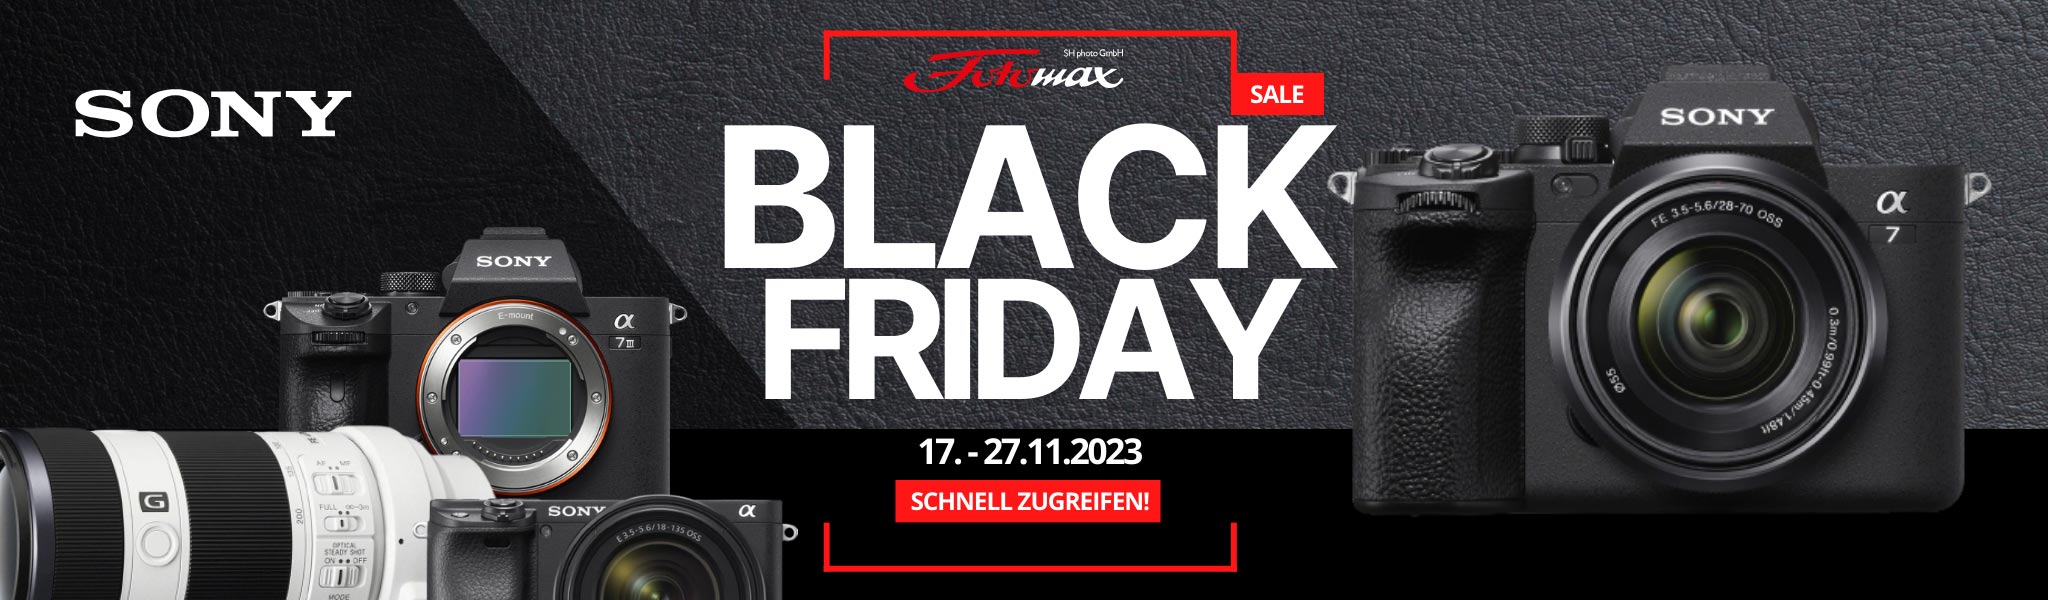 Sony Black Friday 2023 Angebote und Aktionen bei Fotomax